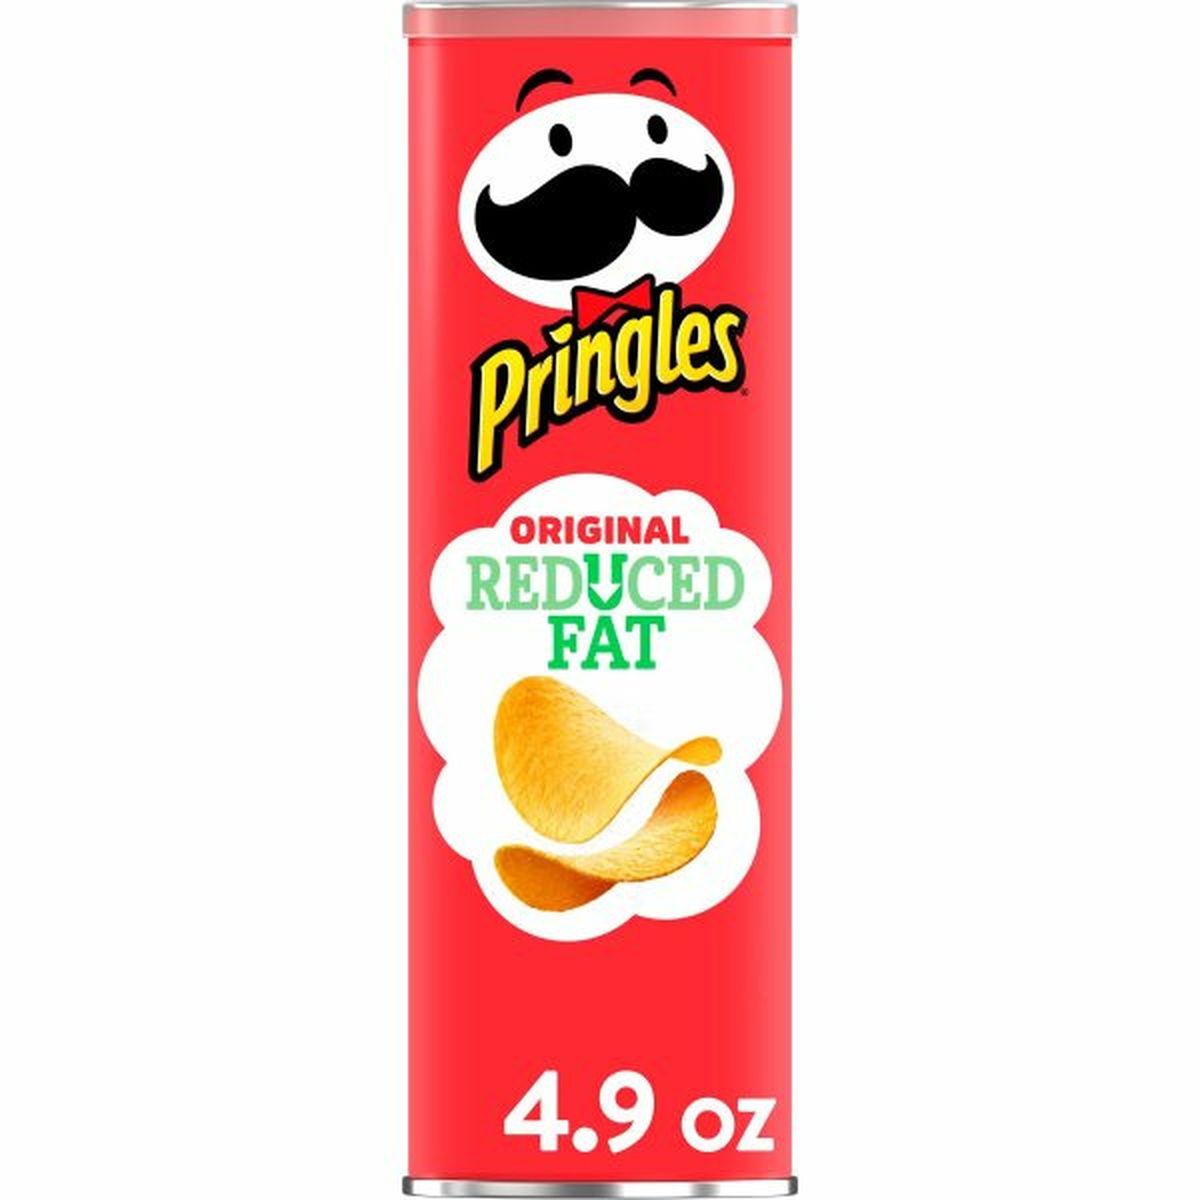 Calories in Pringles Salty Snacks Pringles Potato Crisps Chips, Reduced Fat Original, Snacks On The Go, 4.9oz